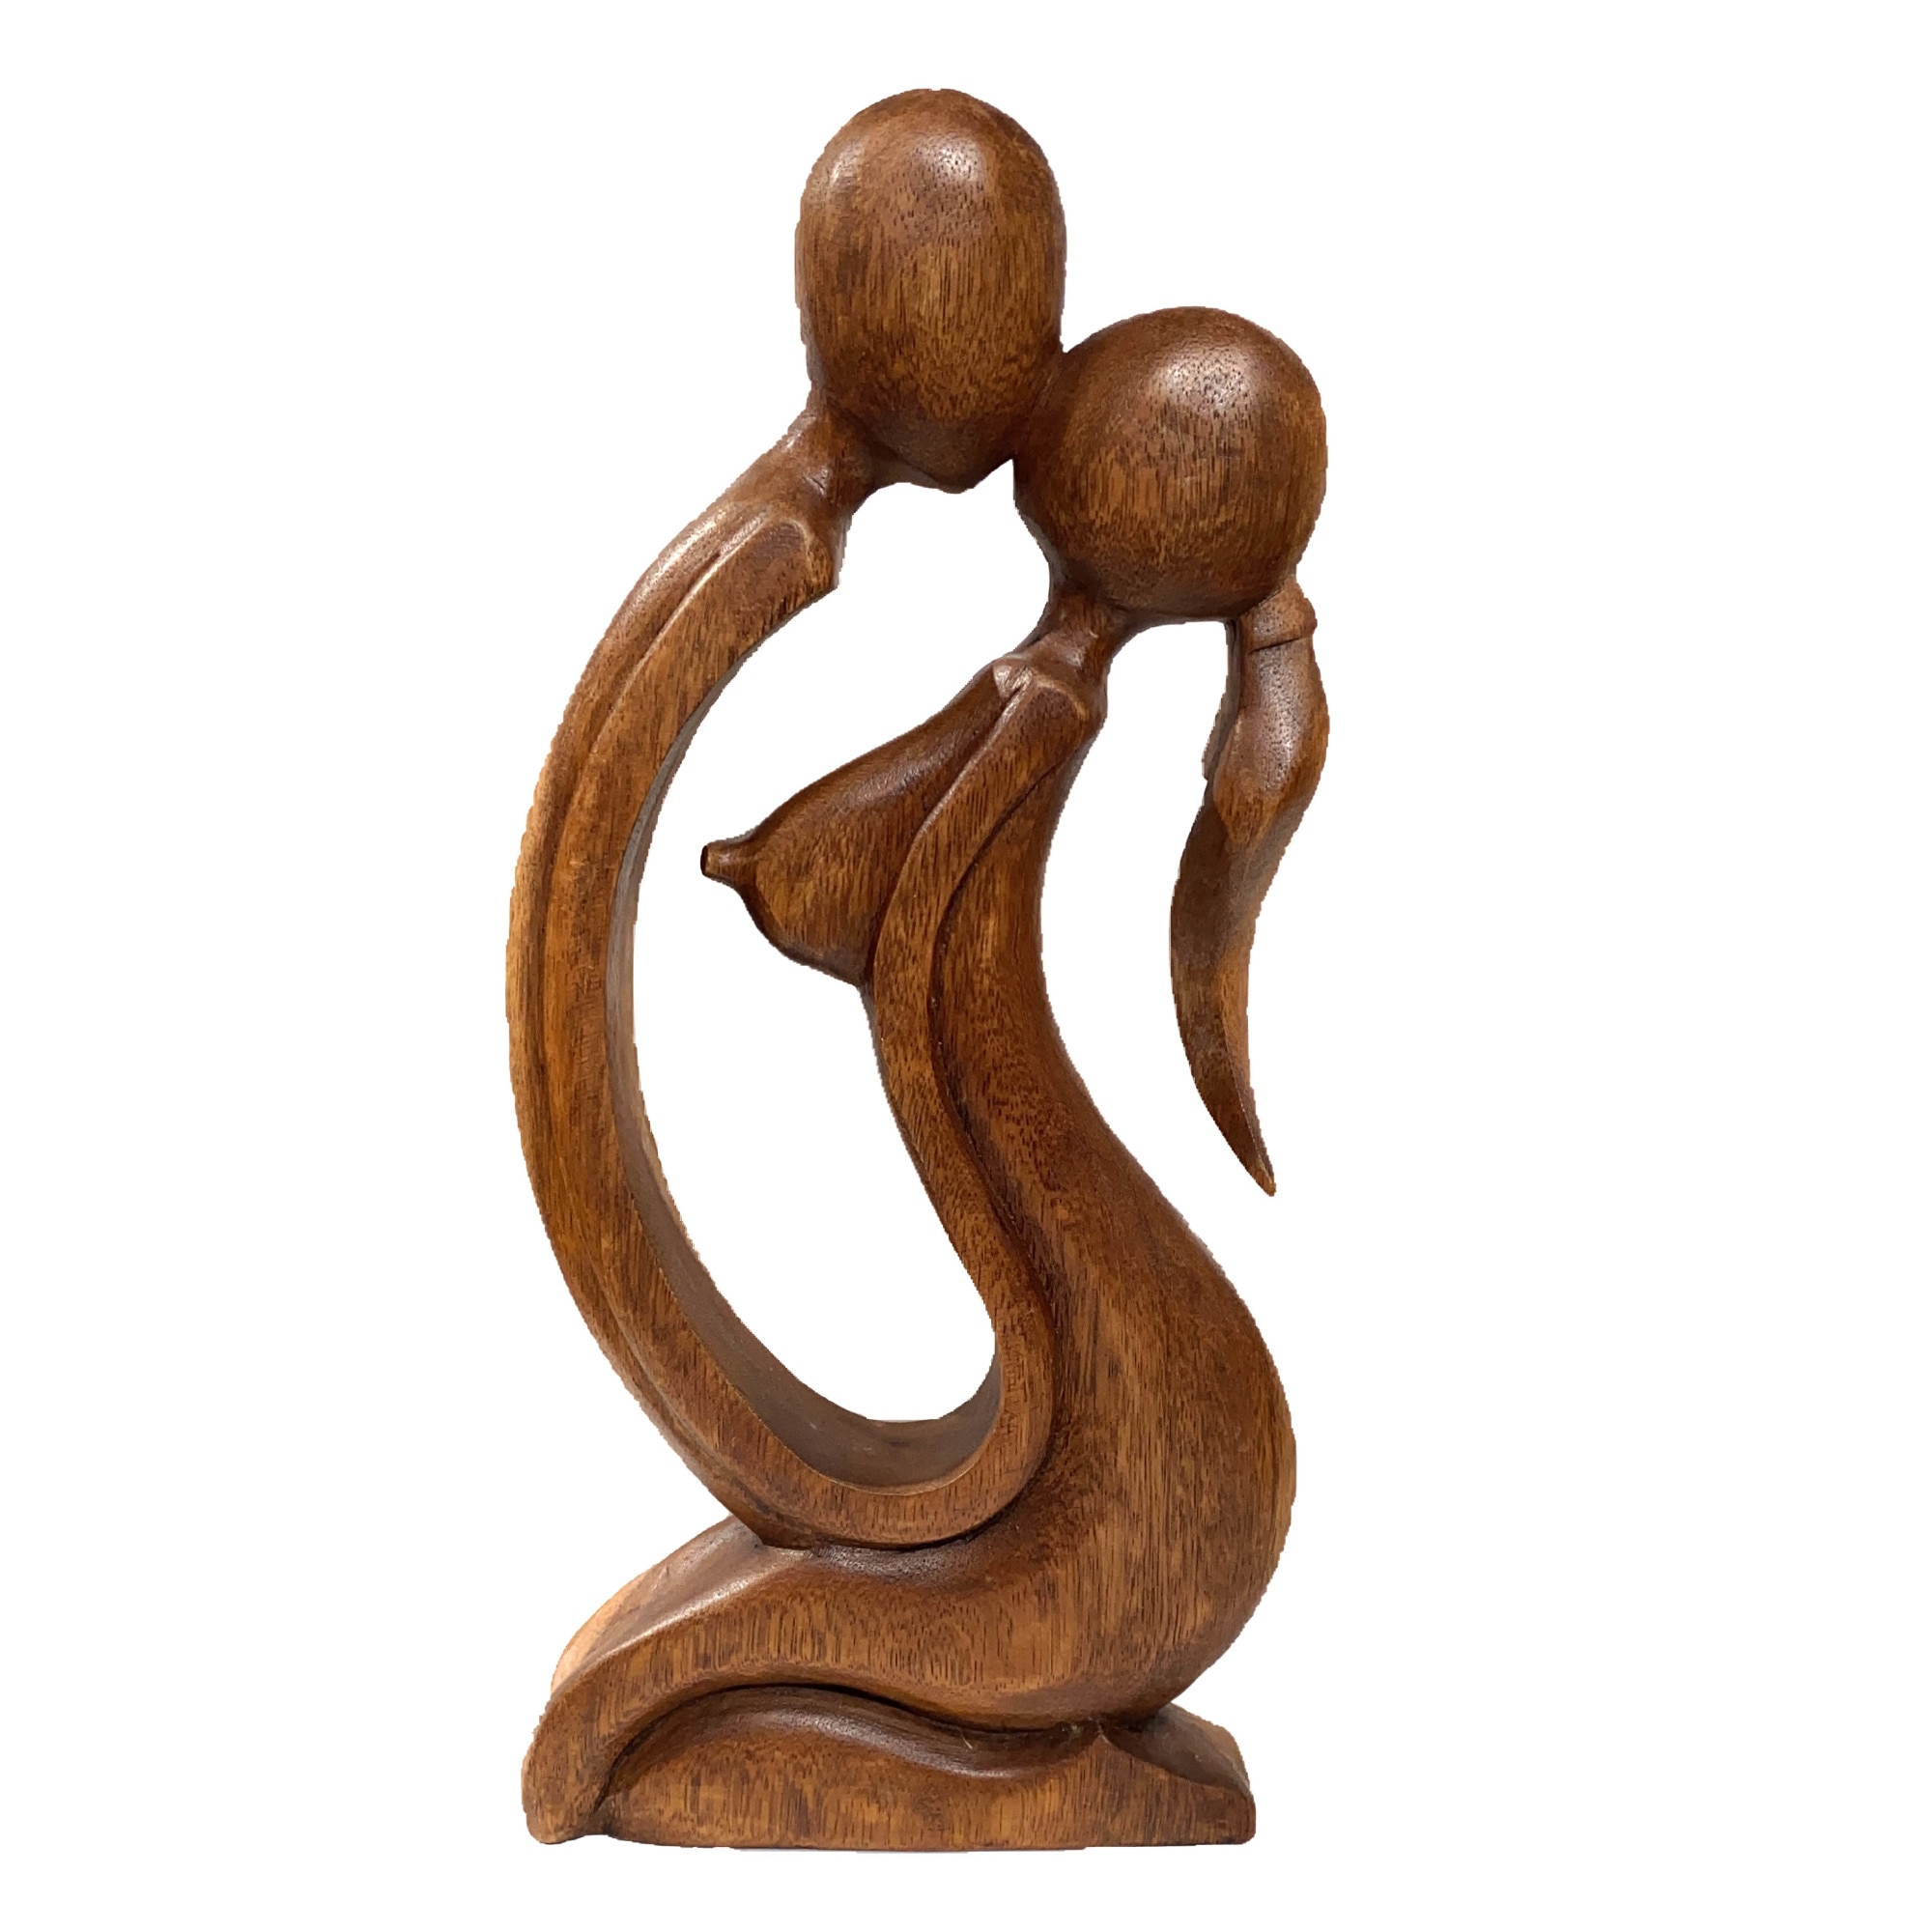 Statueta sculptata din lemn exotic, maro, Cuplu mijlociu